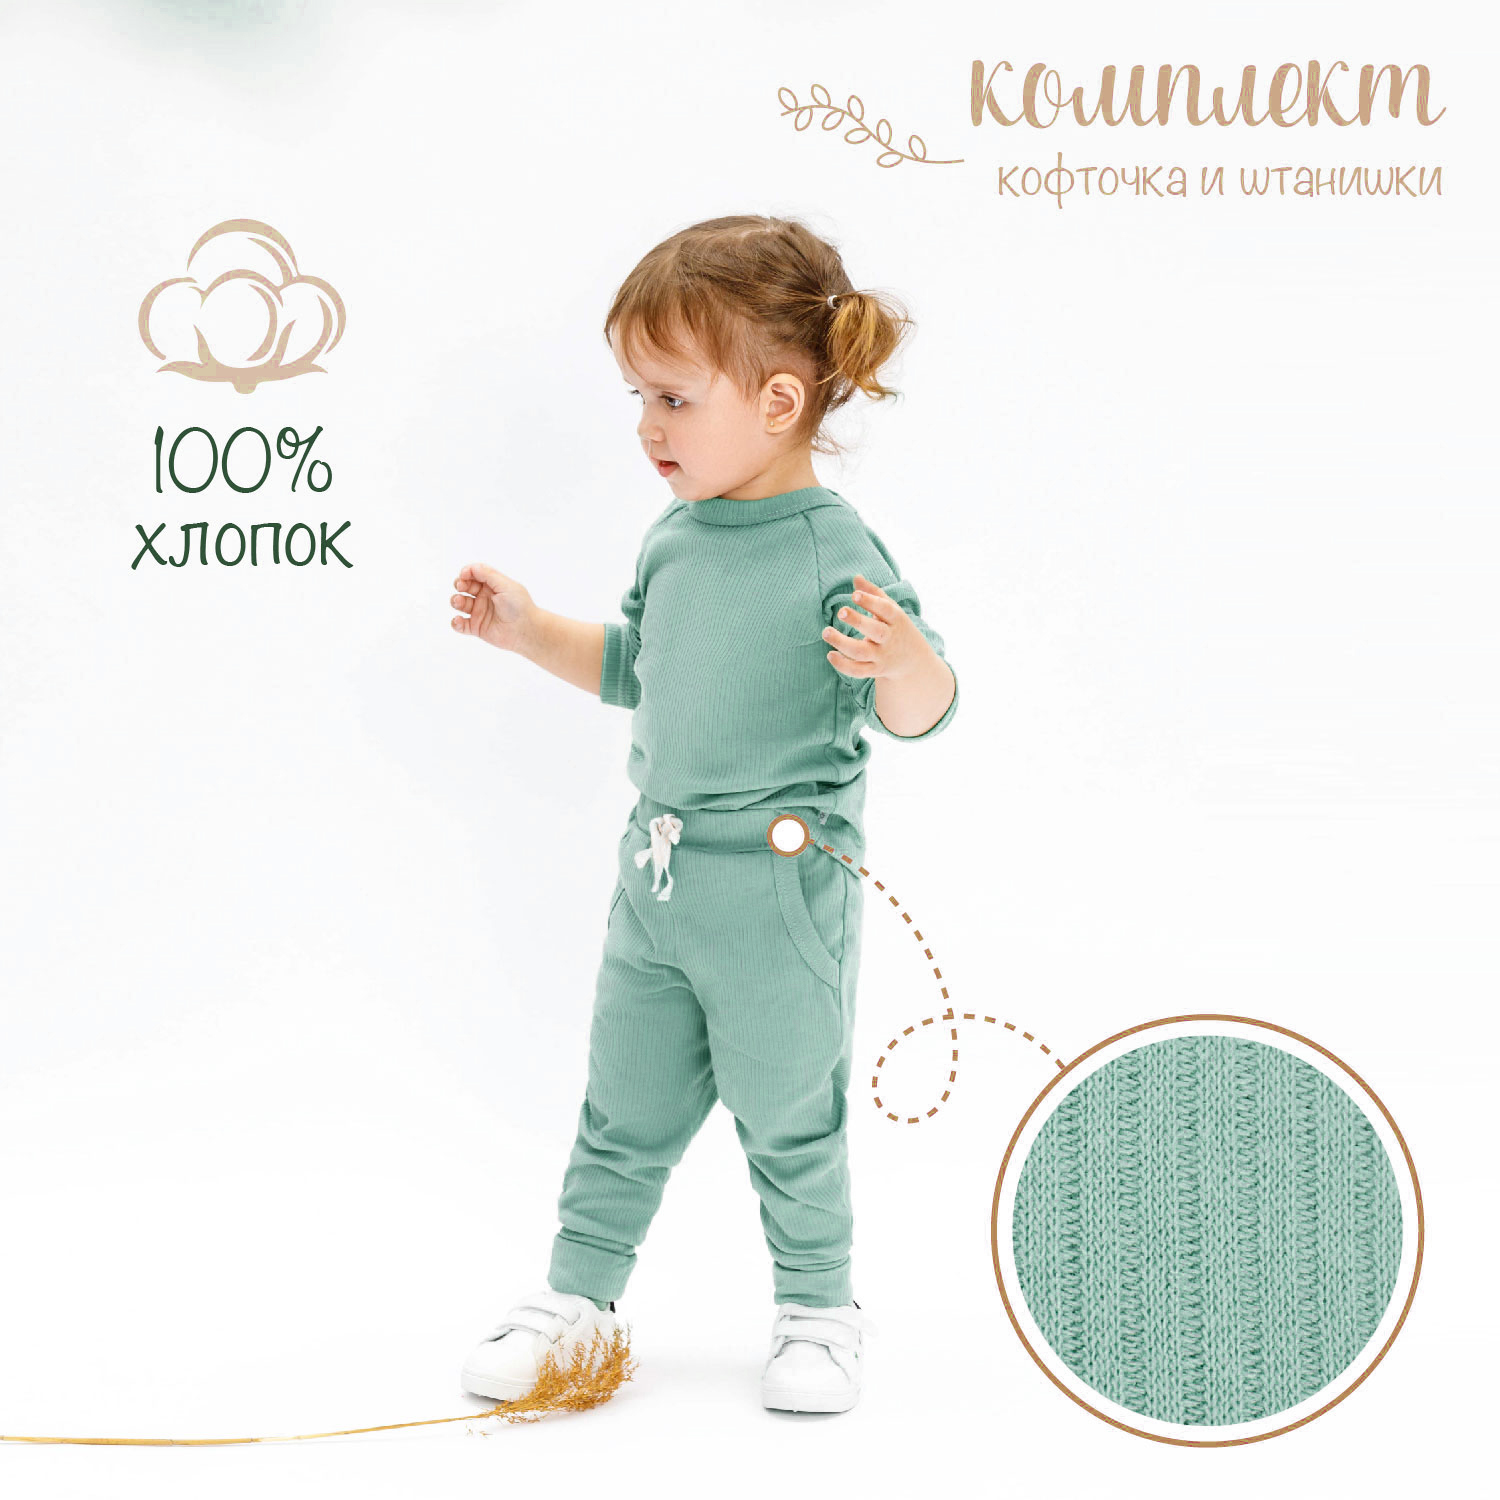 Кофточка и ползунки (штанишки) детские AMAROBABY Fashion, зеленый, размер 68 star kidz костюм штанишки и кофточка friend